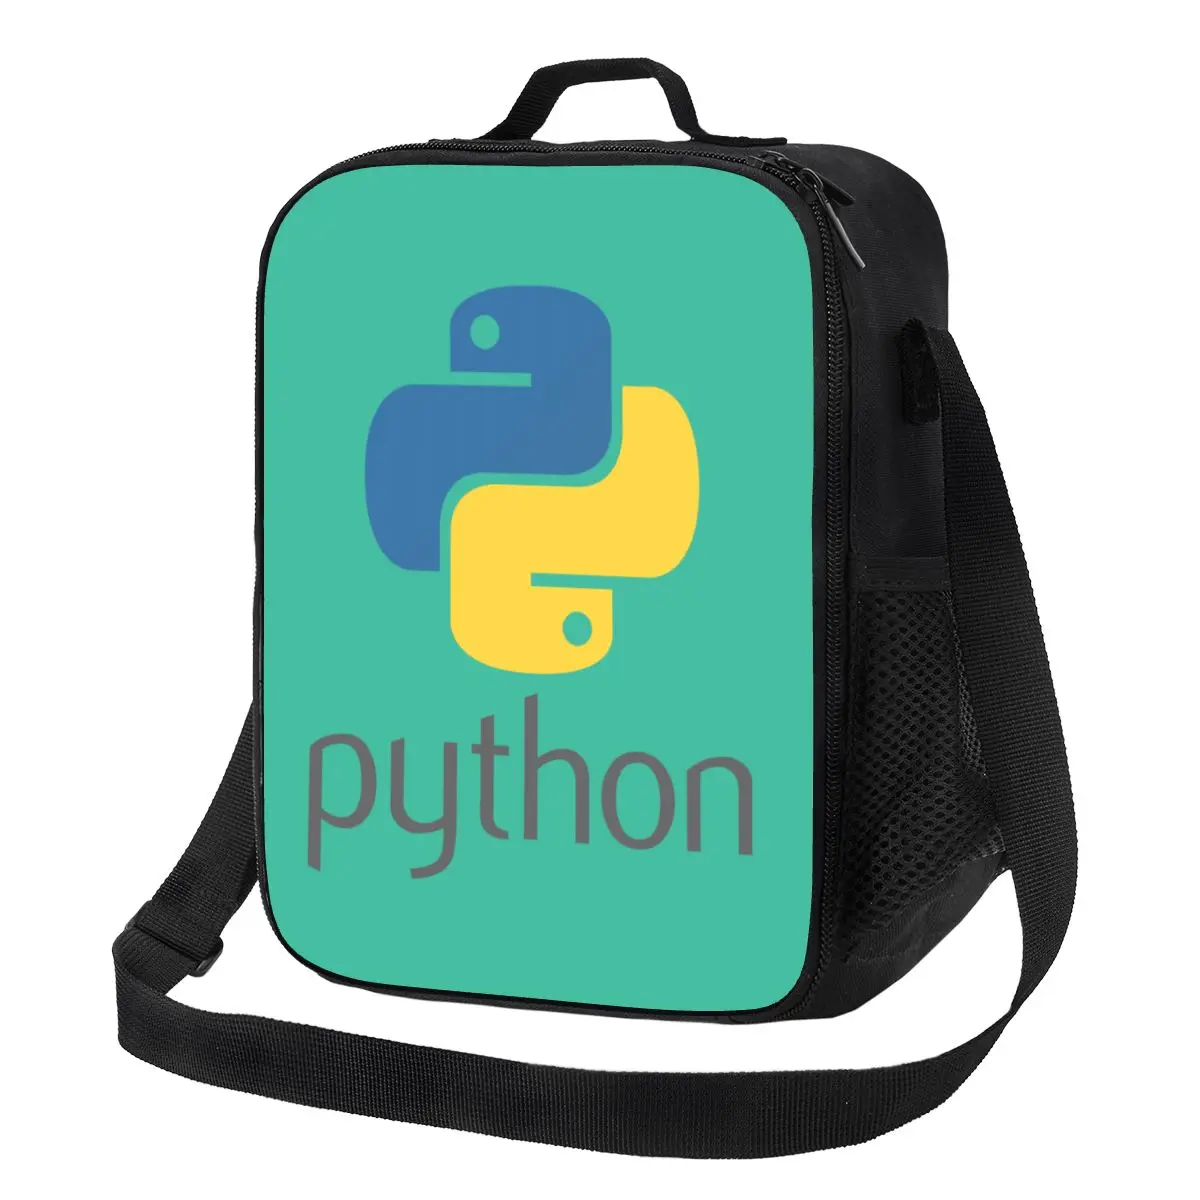 Programador Python Símbolo Aislado de la Bolsa de Almuerzo para el Trabajo de la Escuela Equipo Desarrollador de Programación Programador Enfriador Térmico de la Caja de Almuerzo . ' - ' . 0